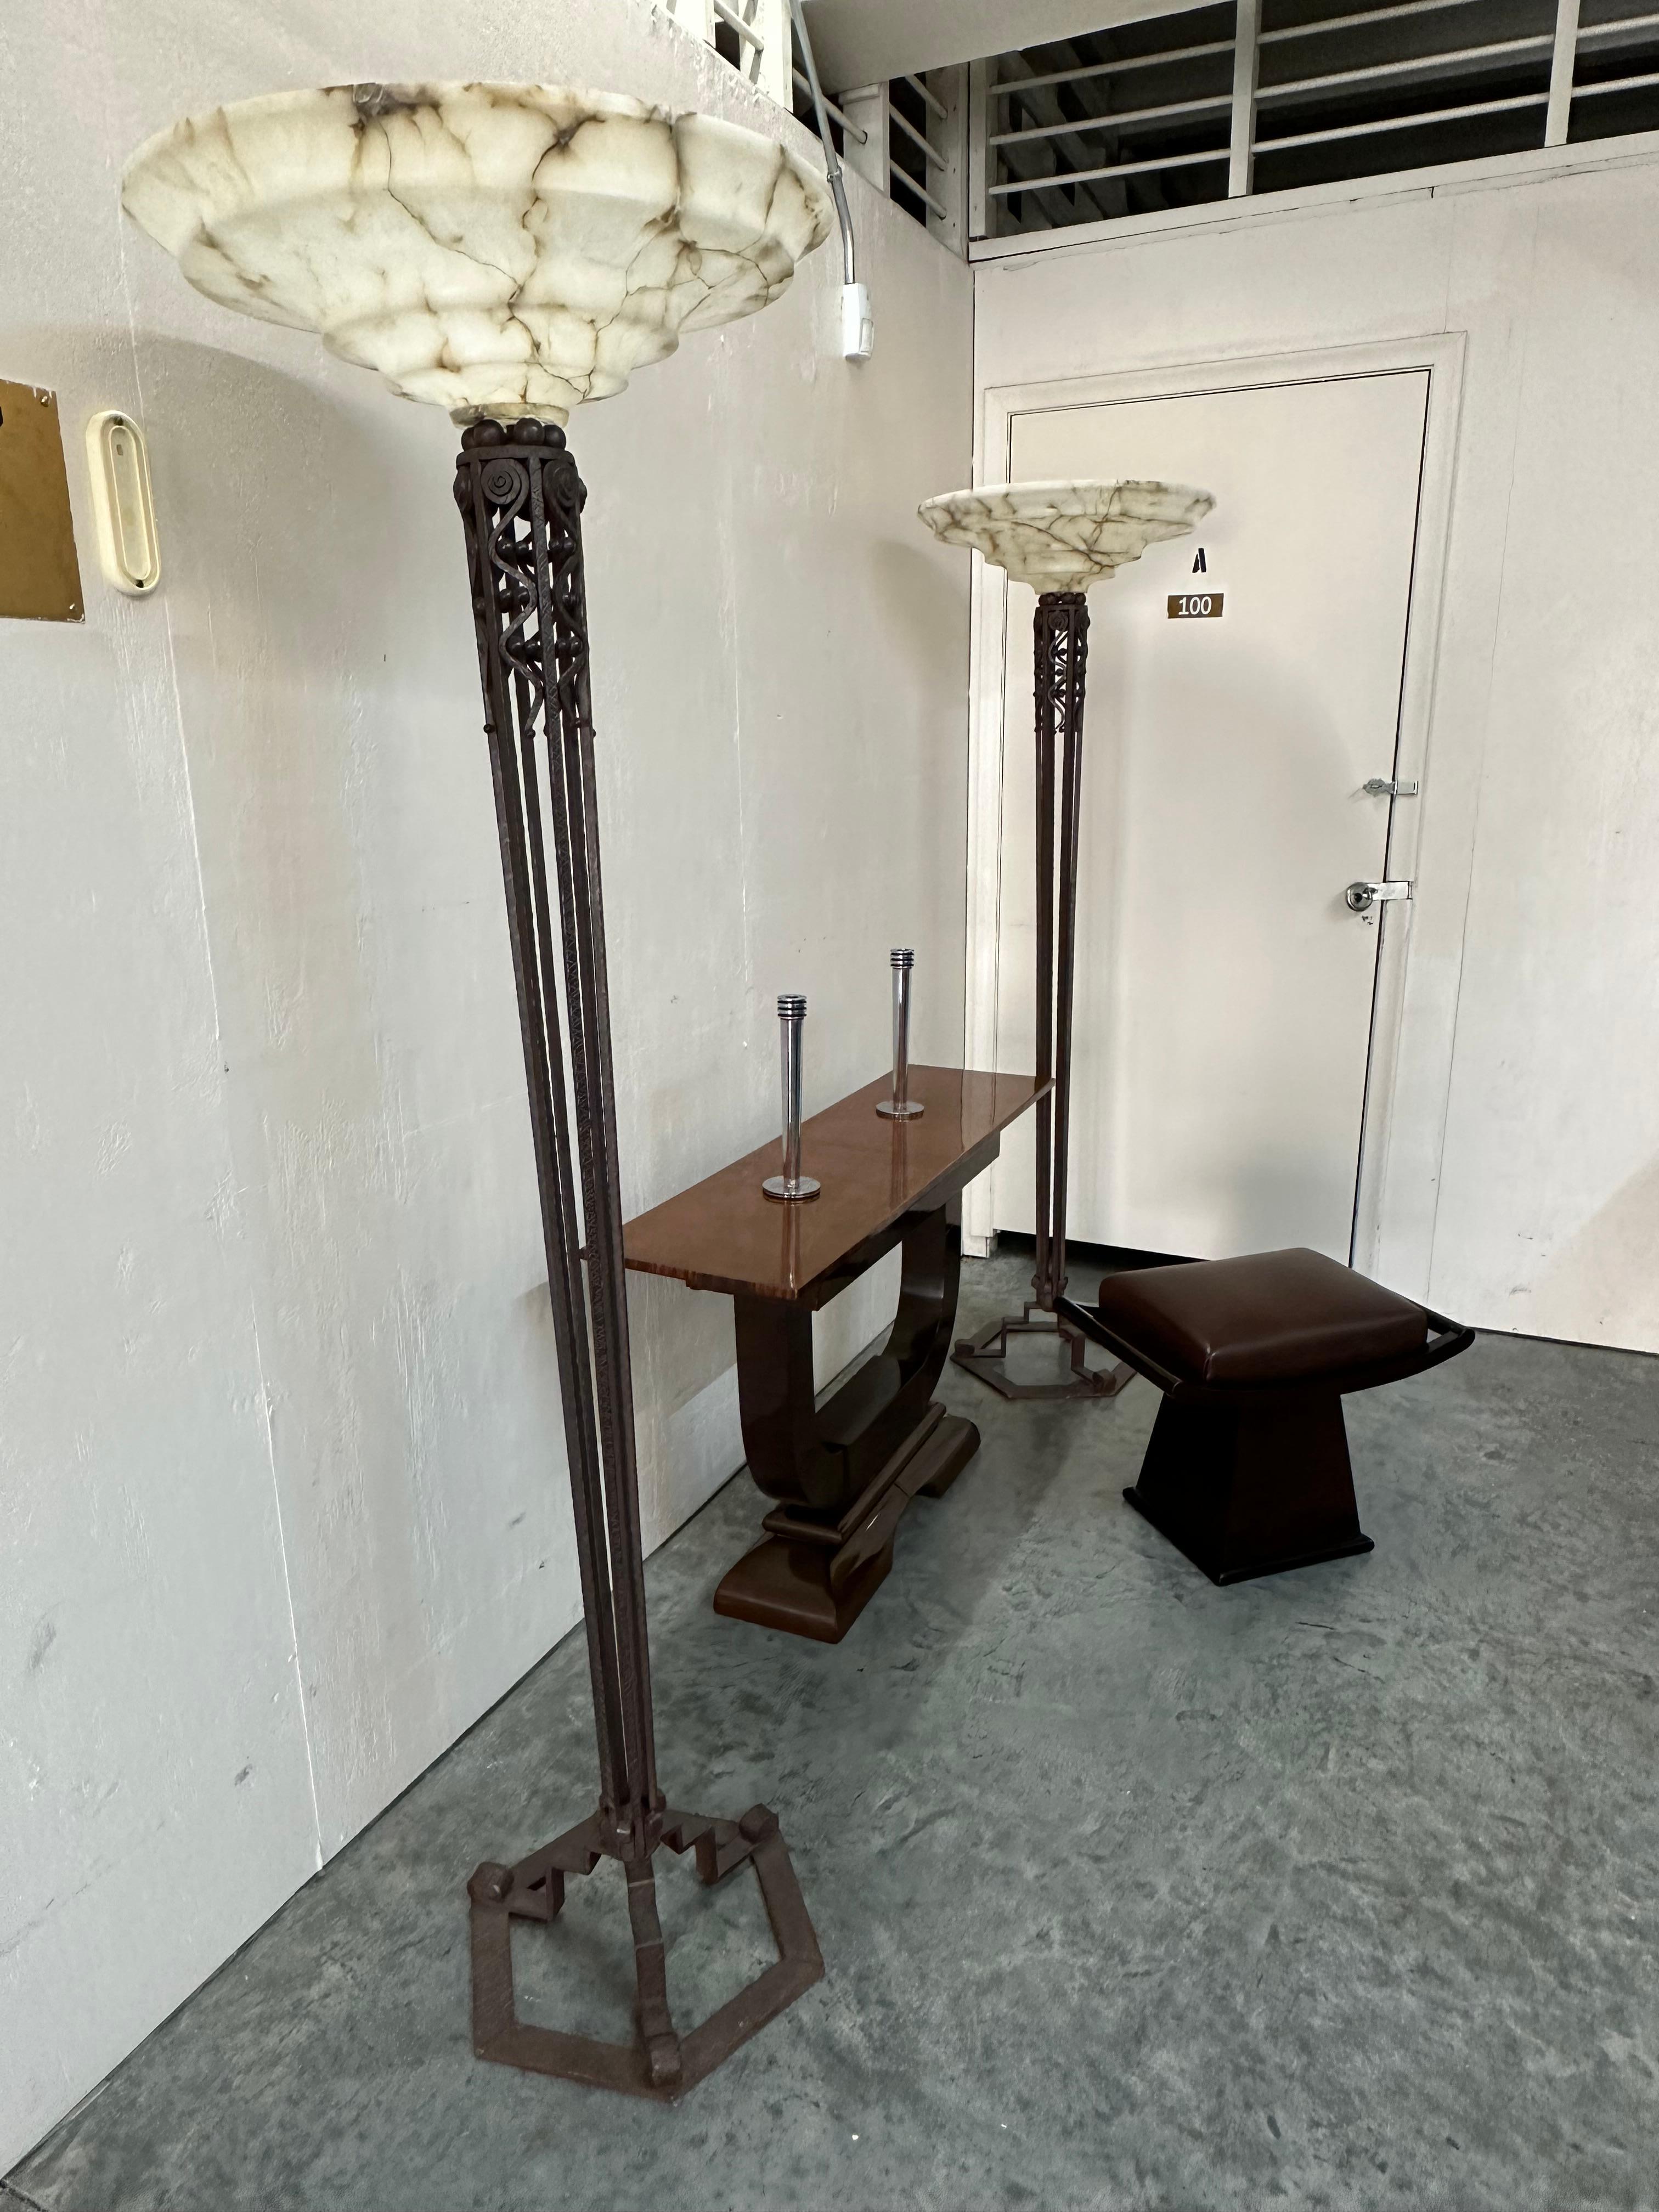 2 Floor Lamps, Jugendstil, Art Nouveau, Liberty, Materials: Alabaster and iron For Sale 4